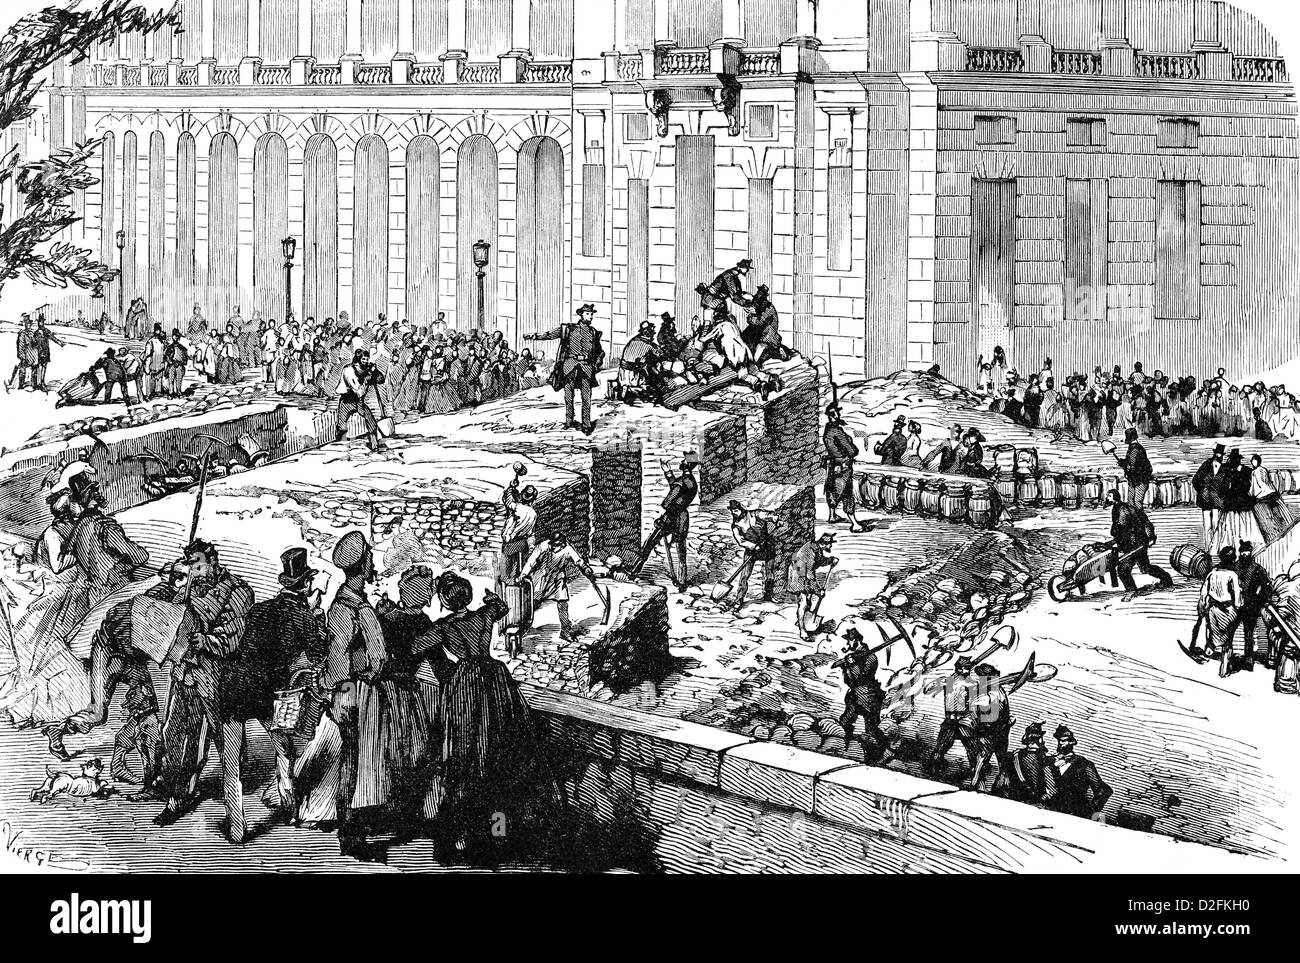 Des barricades de la Commune de Paris ou la Commune de Paris, 1871, rue Saint-Florentin, Paris, France, Europe, Banque D'Images